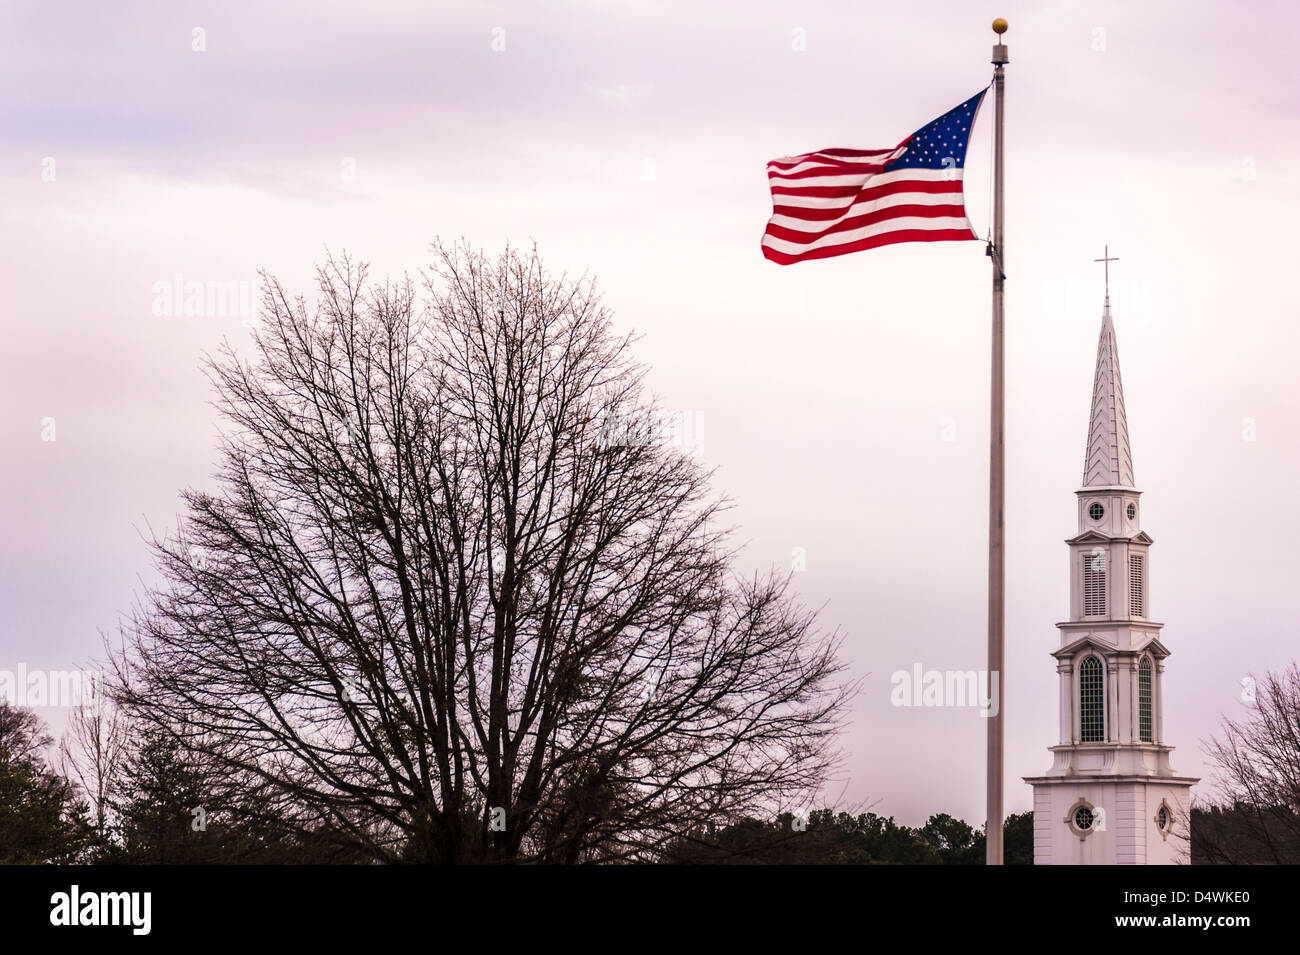 Werte der Gemeinschaft des Glaubens und der Patriotismus sind in den Symbolen der eine wehende Fahne und Kreuz-Spitze Kirchturm gesehen. Stockfoto